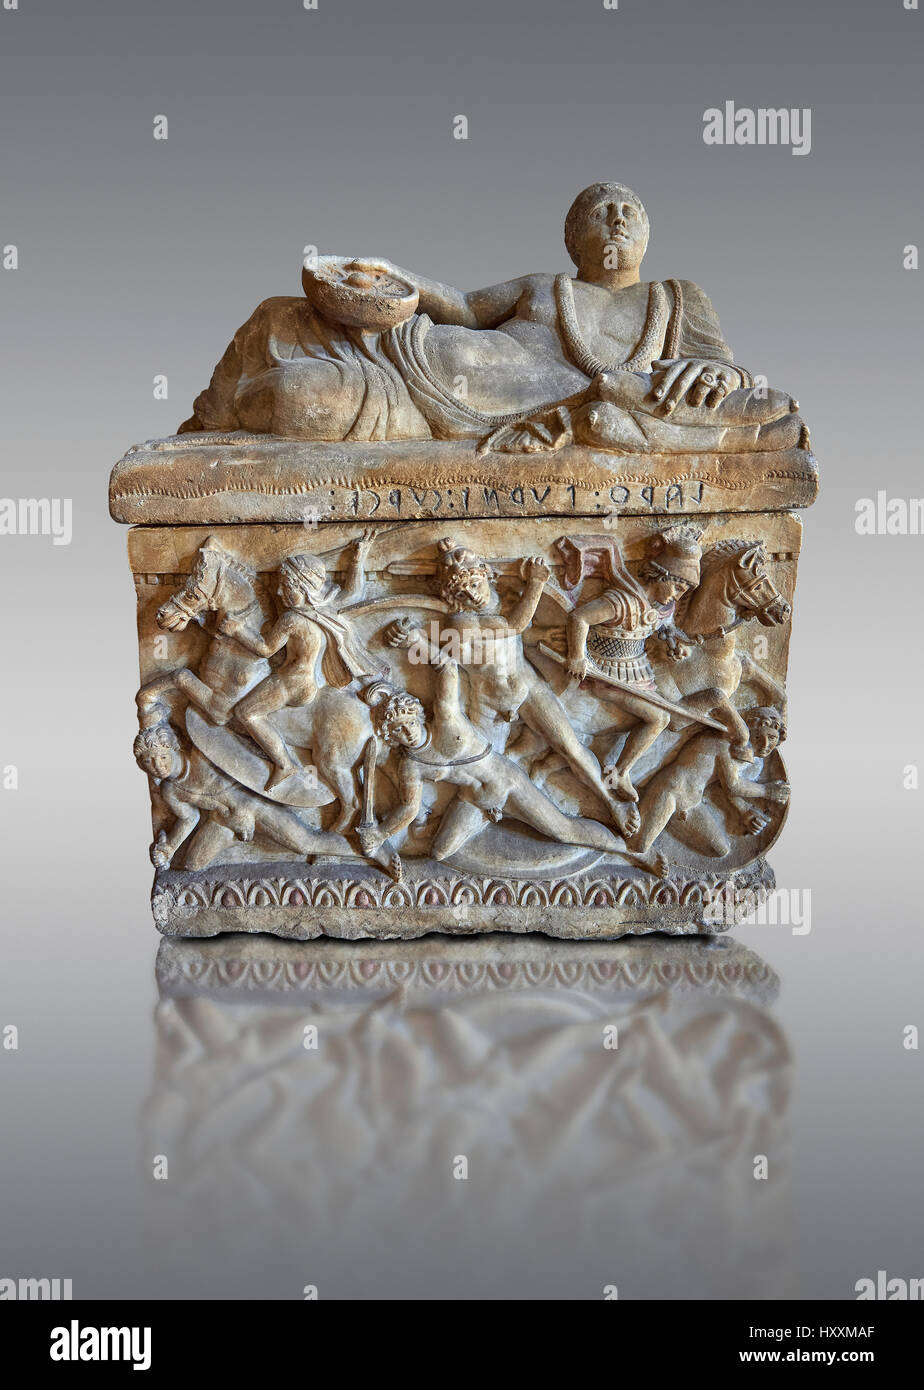 Etrusca stile ellenistico, cineraria funreary, urn , Museo Archeologico Nazionale di Firenze, Italia , contro il grigio Foto Stock